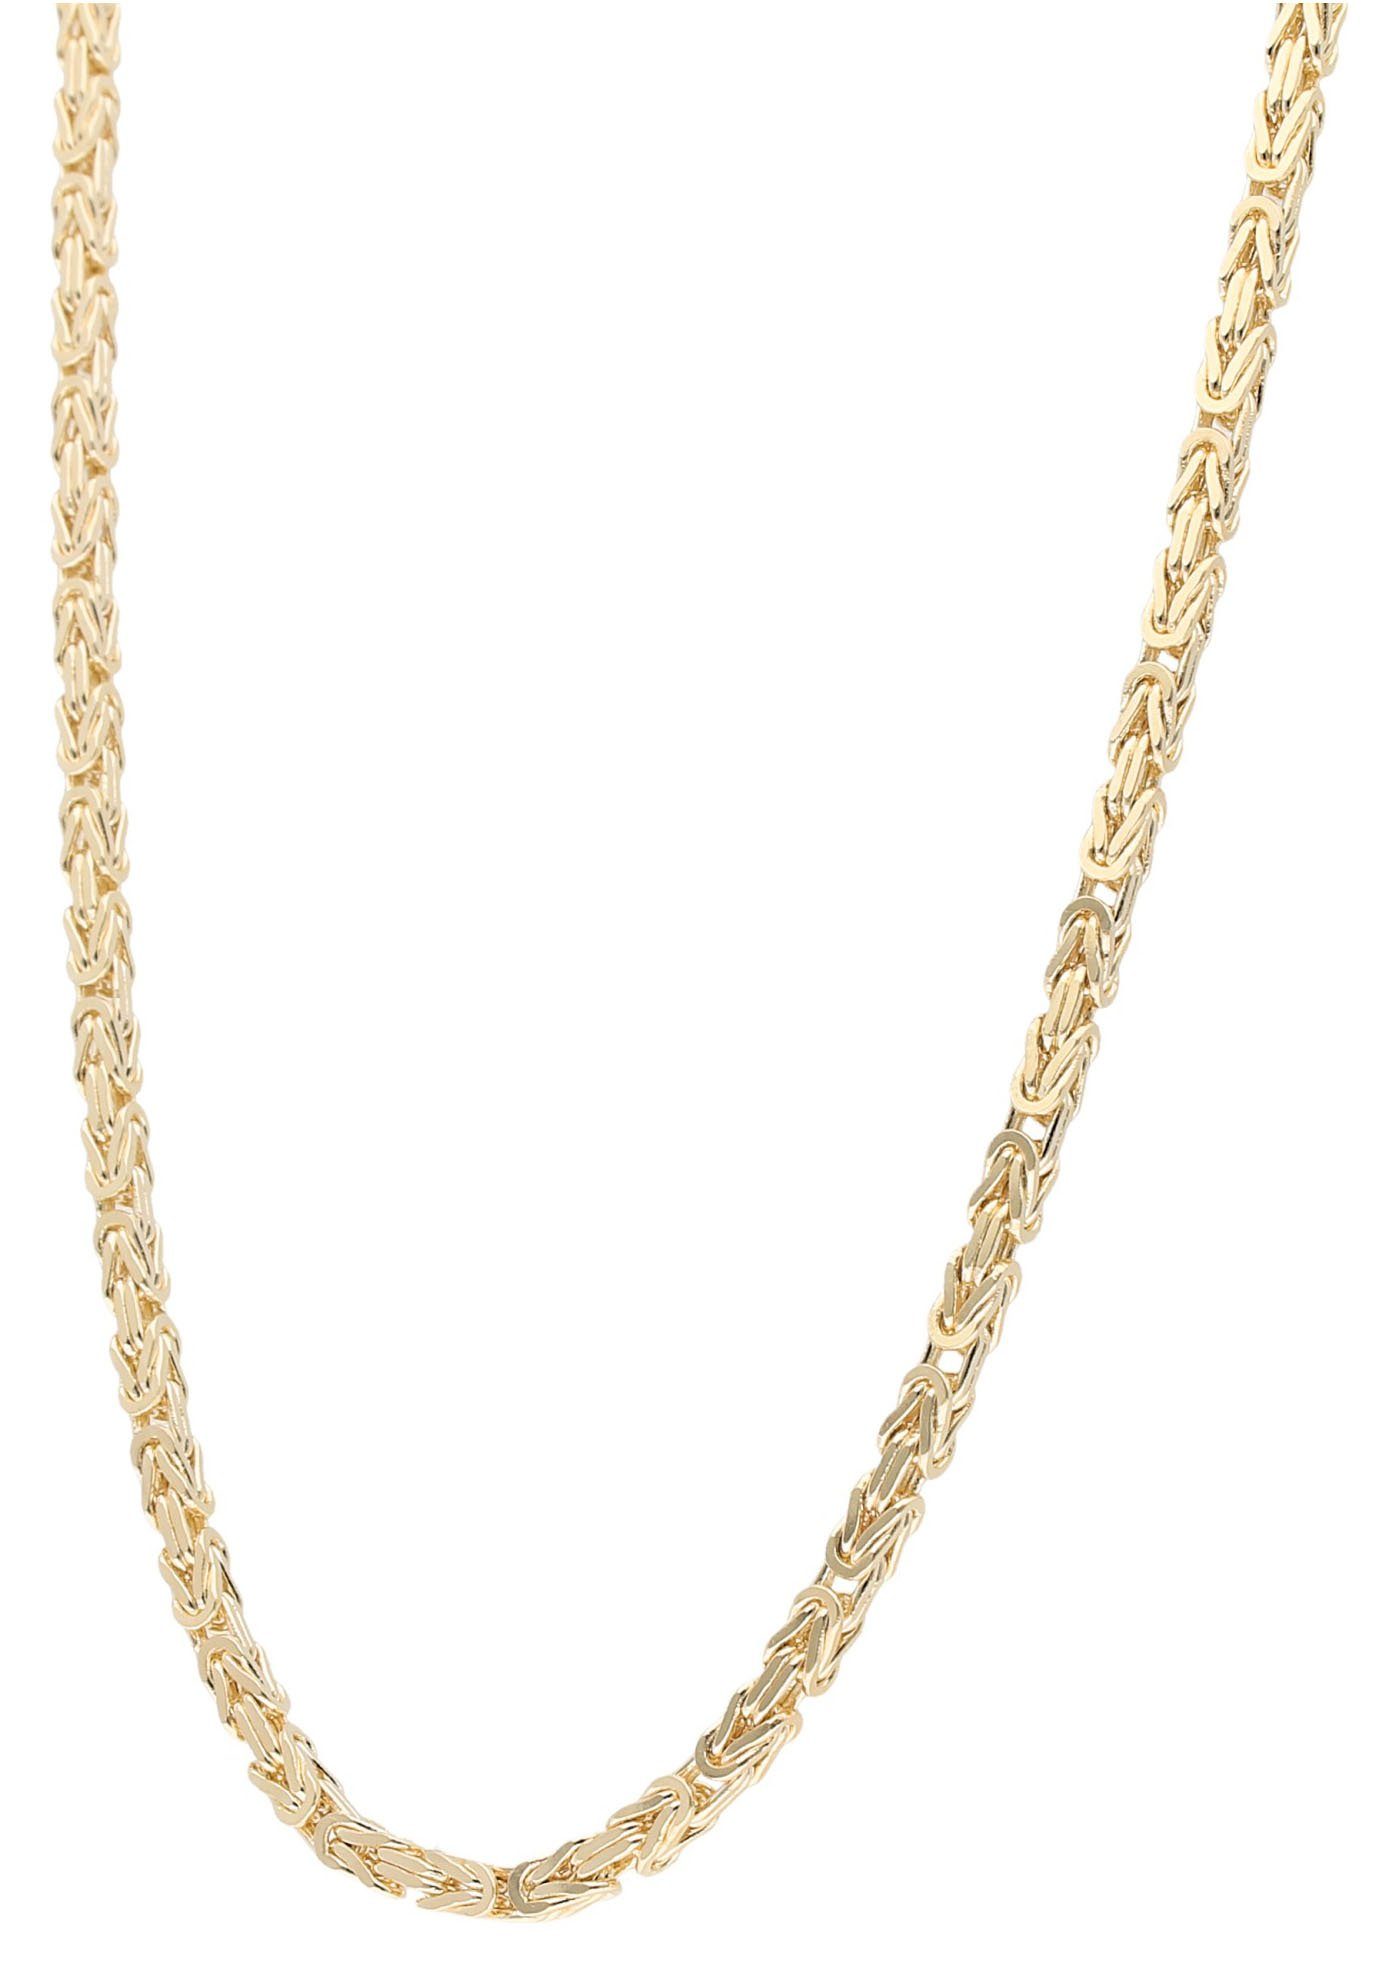 Firetti Goldkette Schmuck Geschenk Gold 375 Halsschmuck Halskette Goldkette Königskette, zu Hoodie, Kleid, Shirt, Jeans, Sneaker! Anlass Geburtstag Weihnachten | Ketten ohne Anhänger